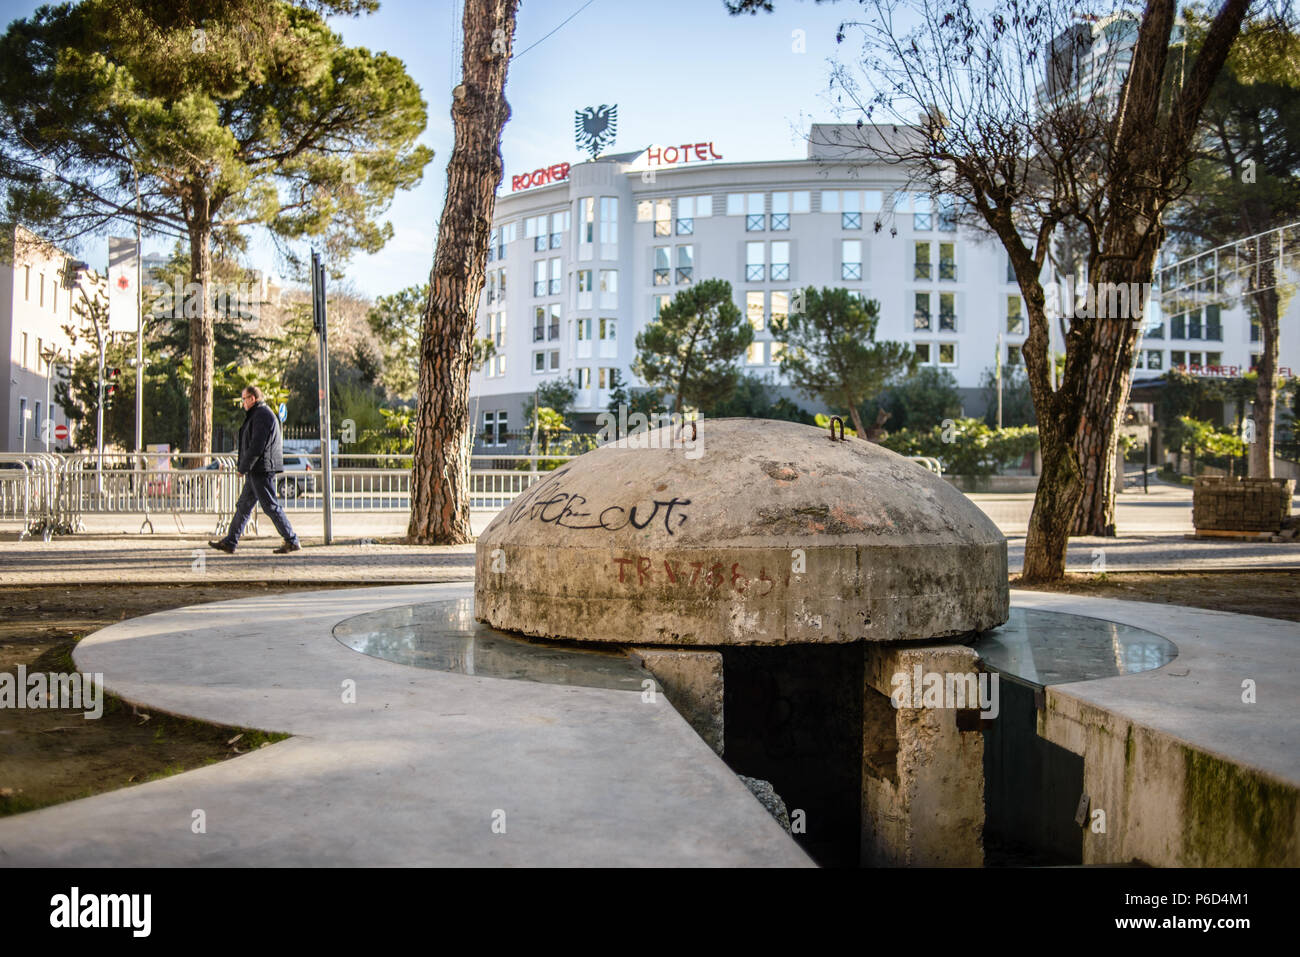 A concrete bunker in the city park in Tirana, Albania Stock Photo